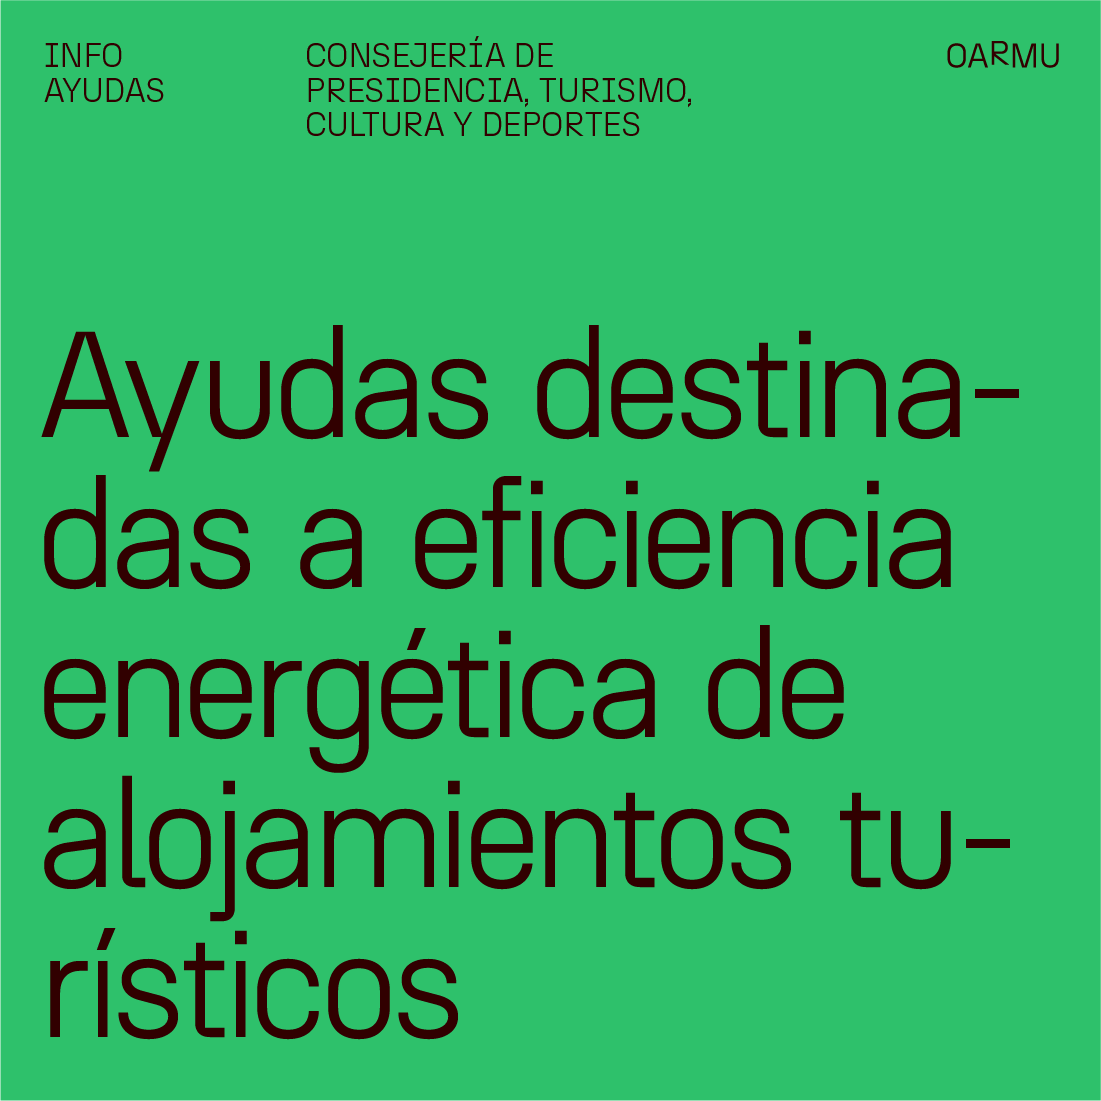 PUBLICADA CONVOCATORIA DE AYUDAS DESTINADAS A PROYECTOS DE EFICIENCIA ENERGETICA DE ALOJAMIENTOS TURISTICOS